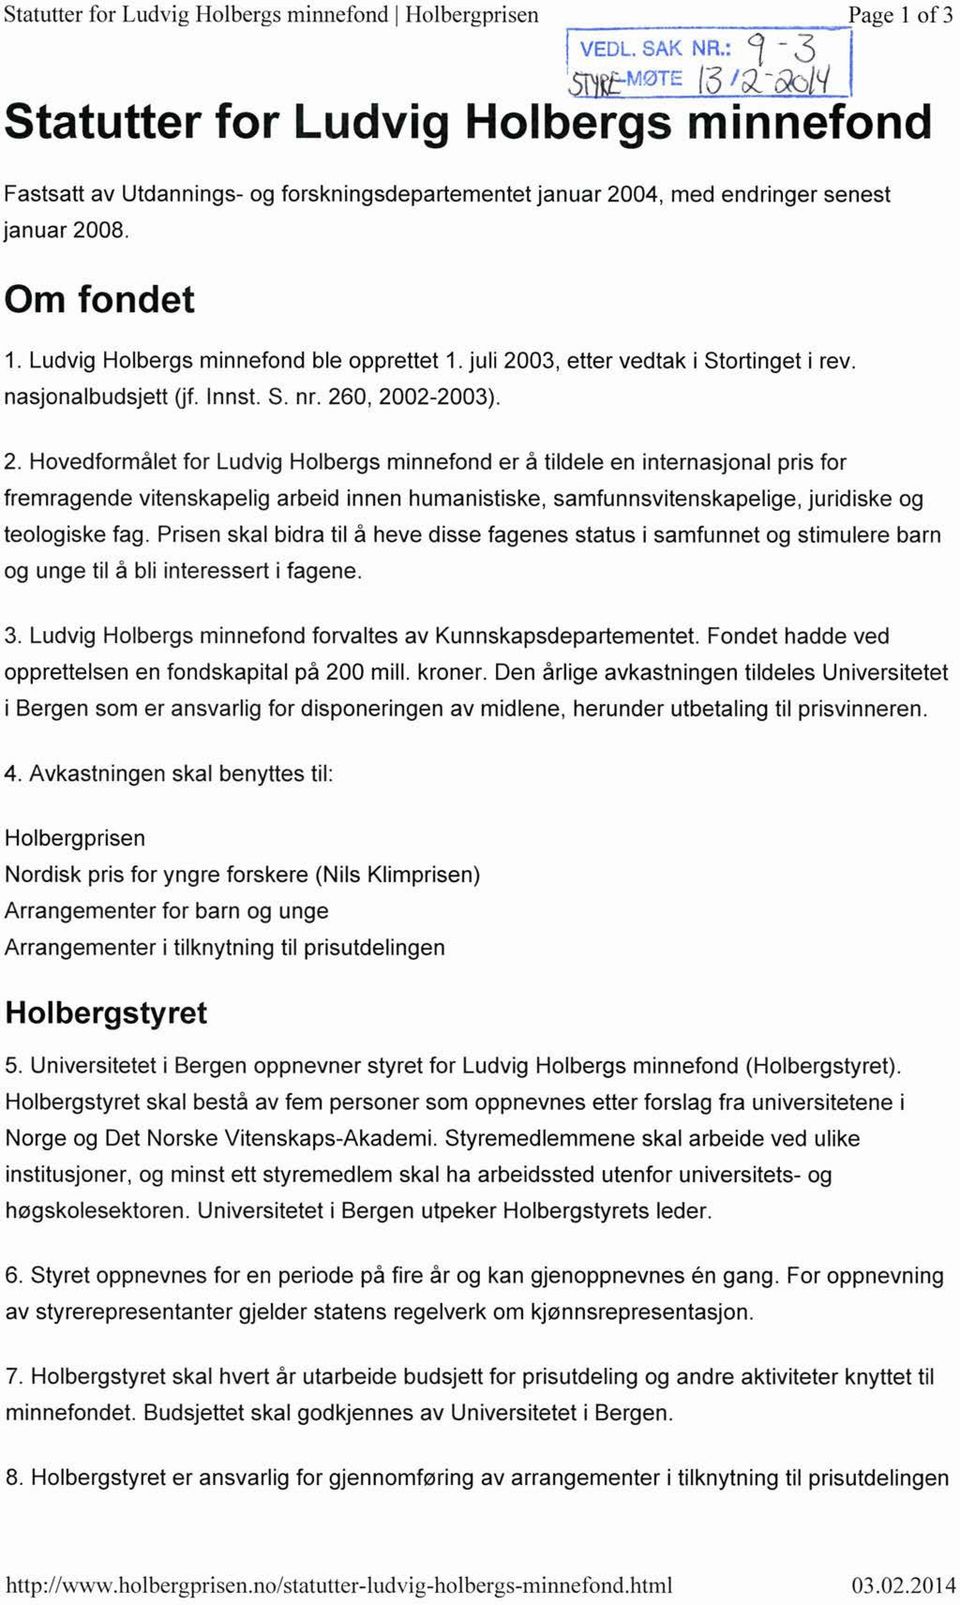 januar 2004, med endringer senest Om fondet Ludvig Holbergs minnefond ble opprettet 1. juli 2003, etter vedtak i Stortinget i rev. nasjonalbudsjett (jf. Innst. S. nr. 260, 2002-2003).